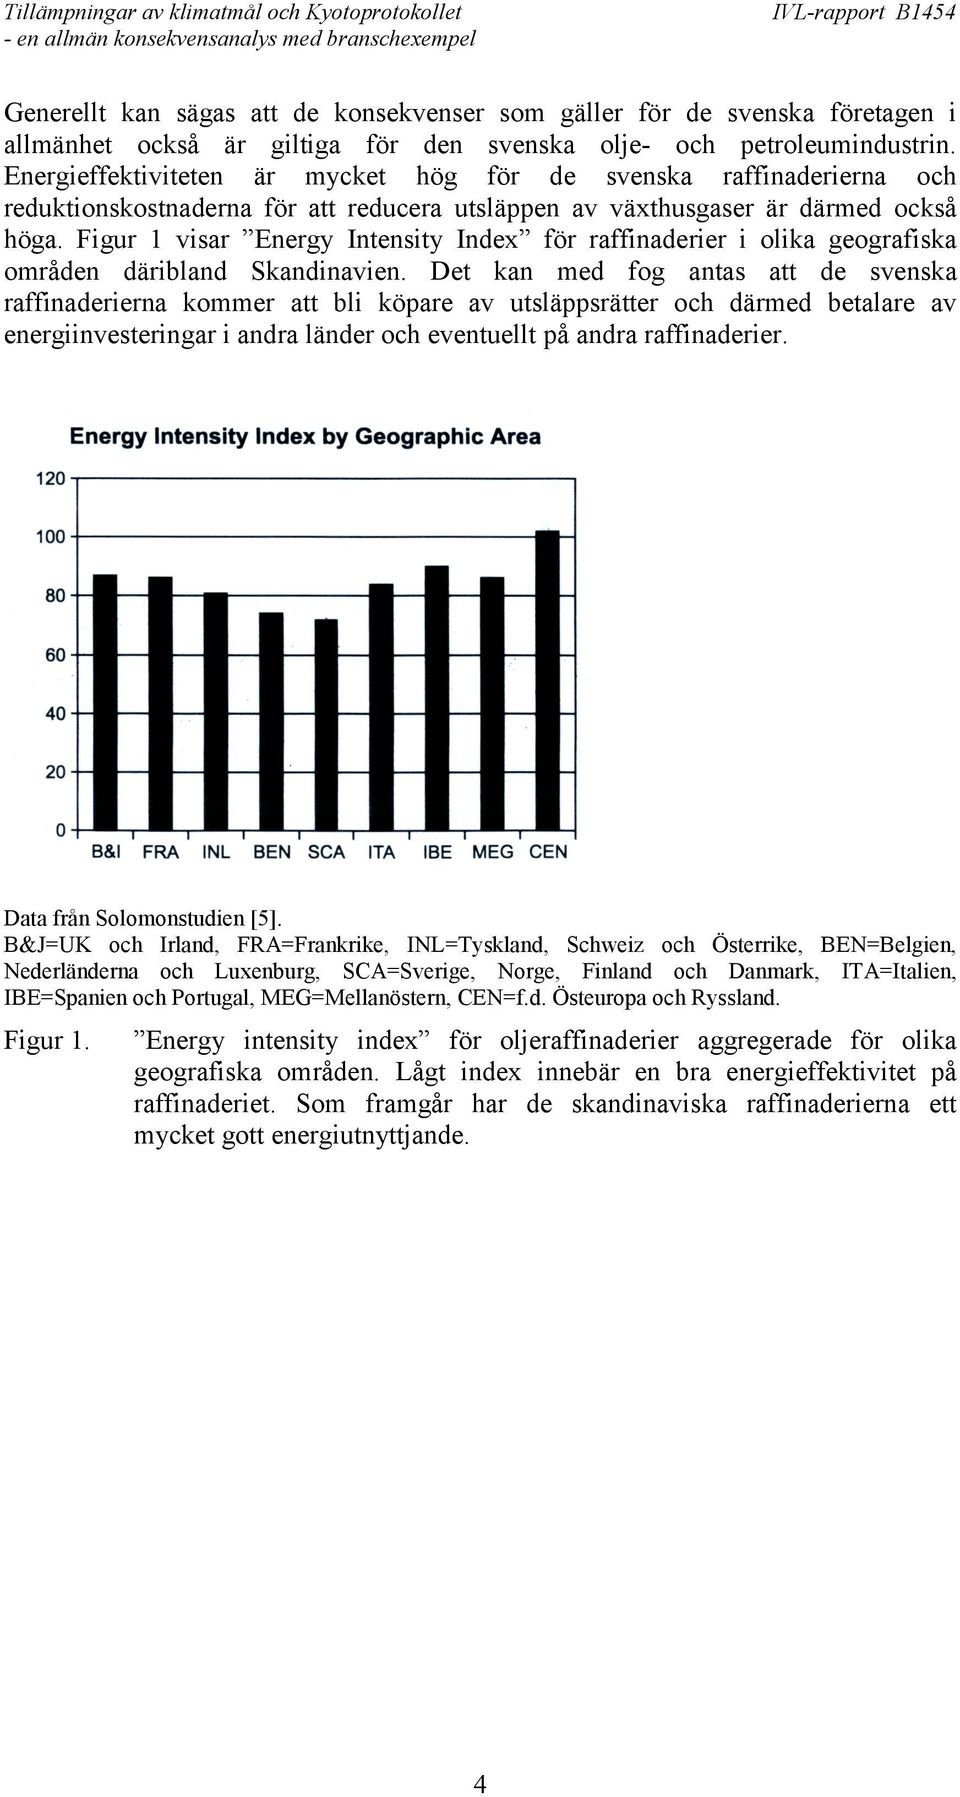 Figur 1 visar Energy Intensity Index för raffinaderier i olika geografiska områden däribland Skandinavien.